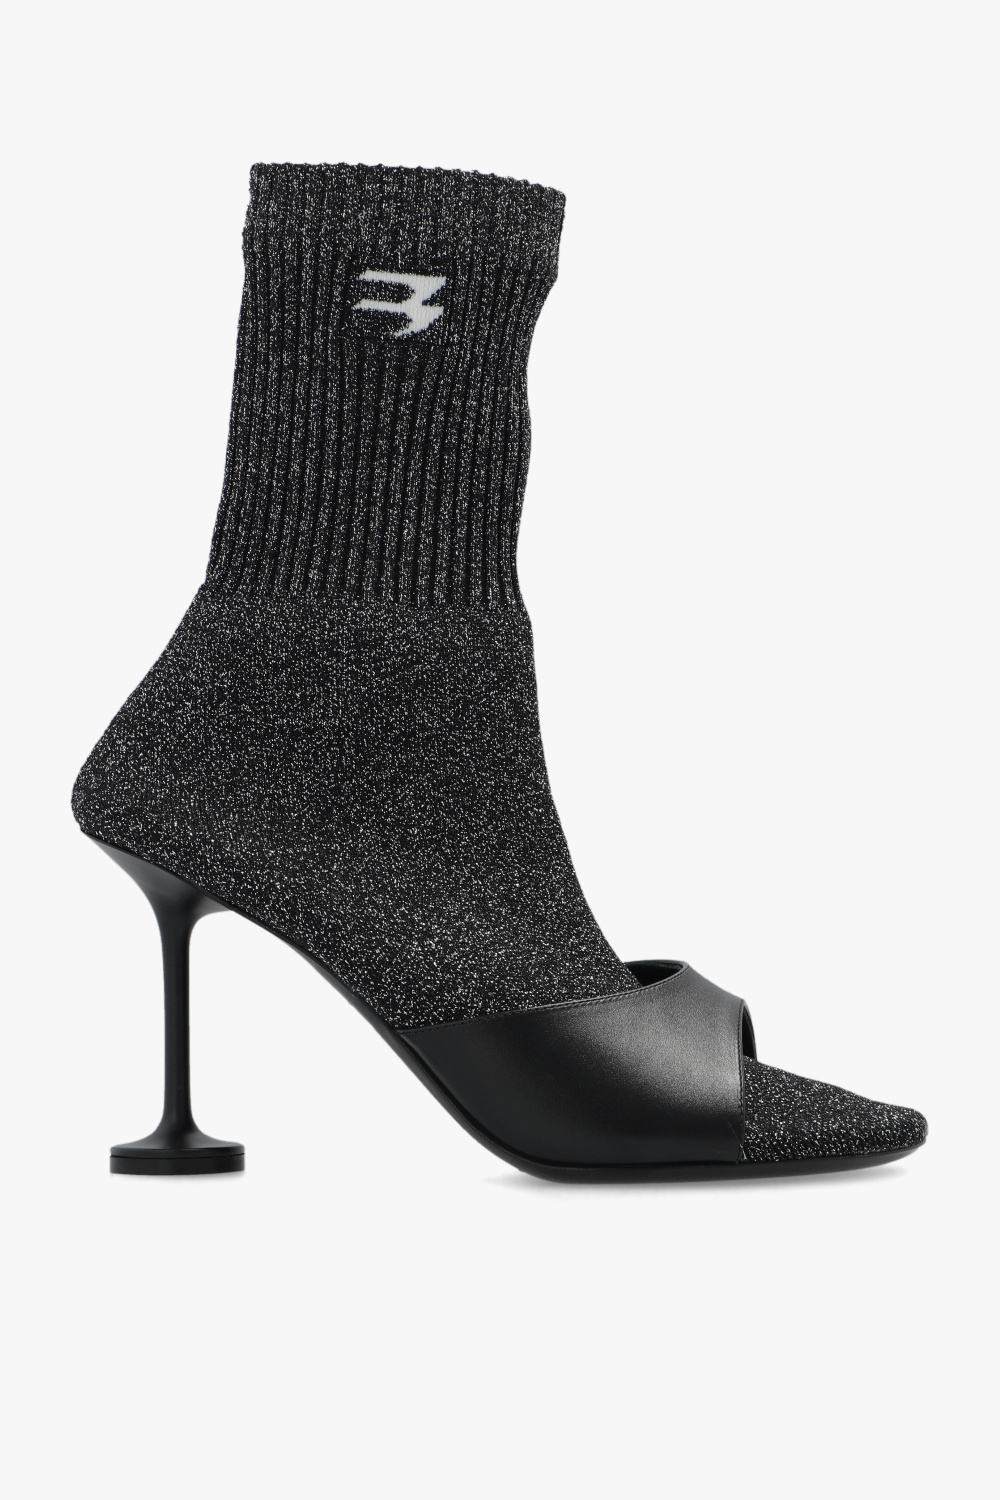 Balenciaga ‘Sock’ pumps